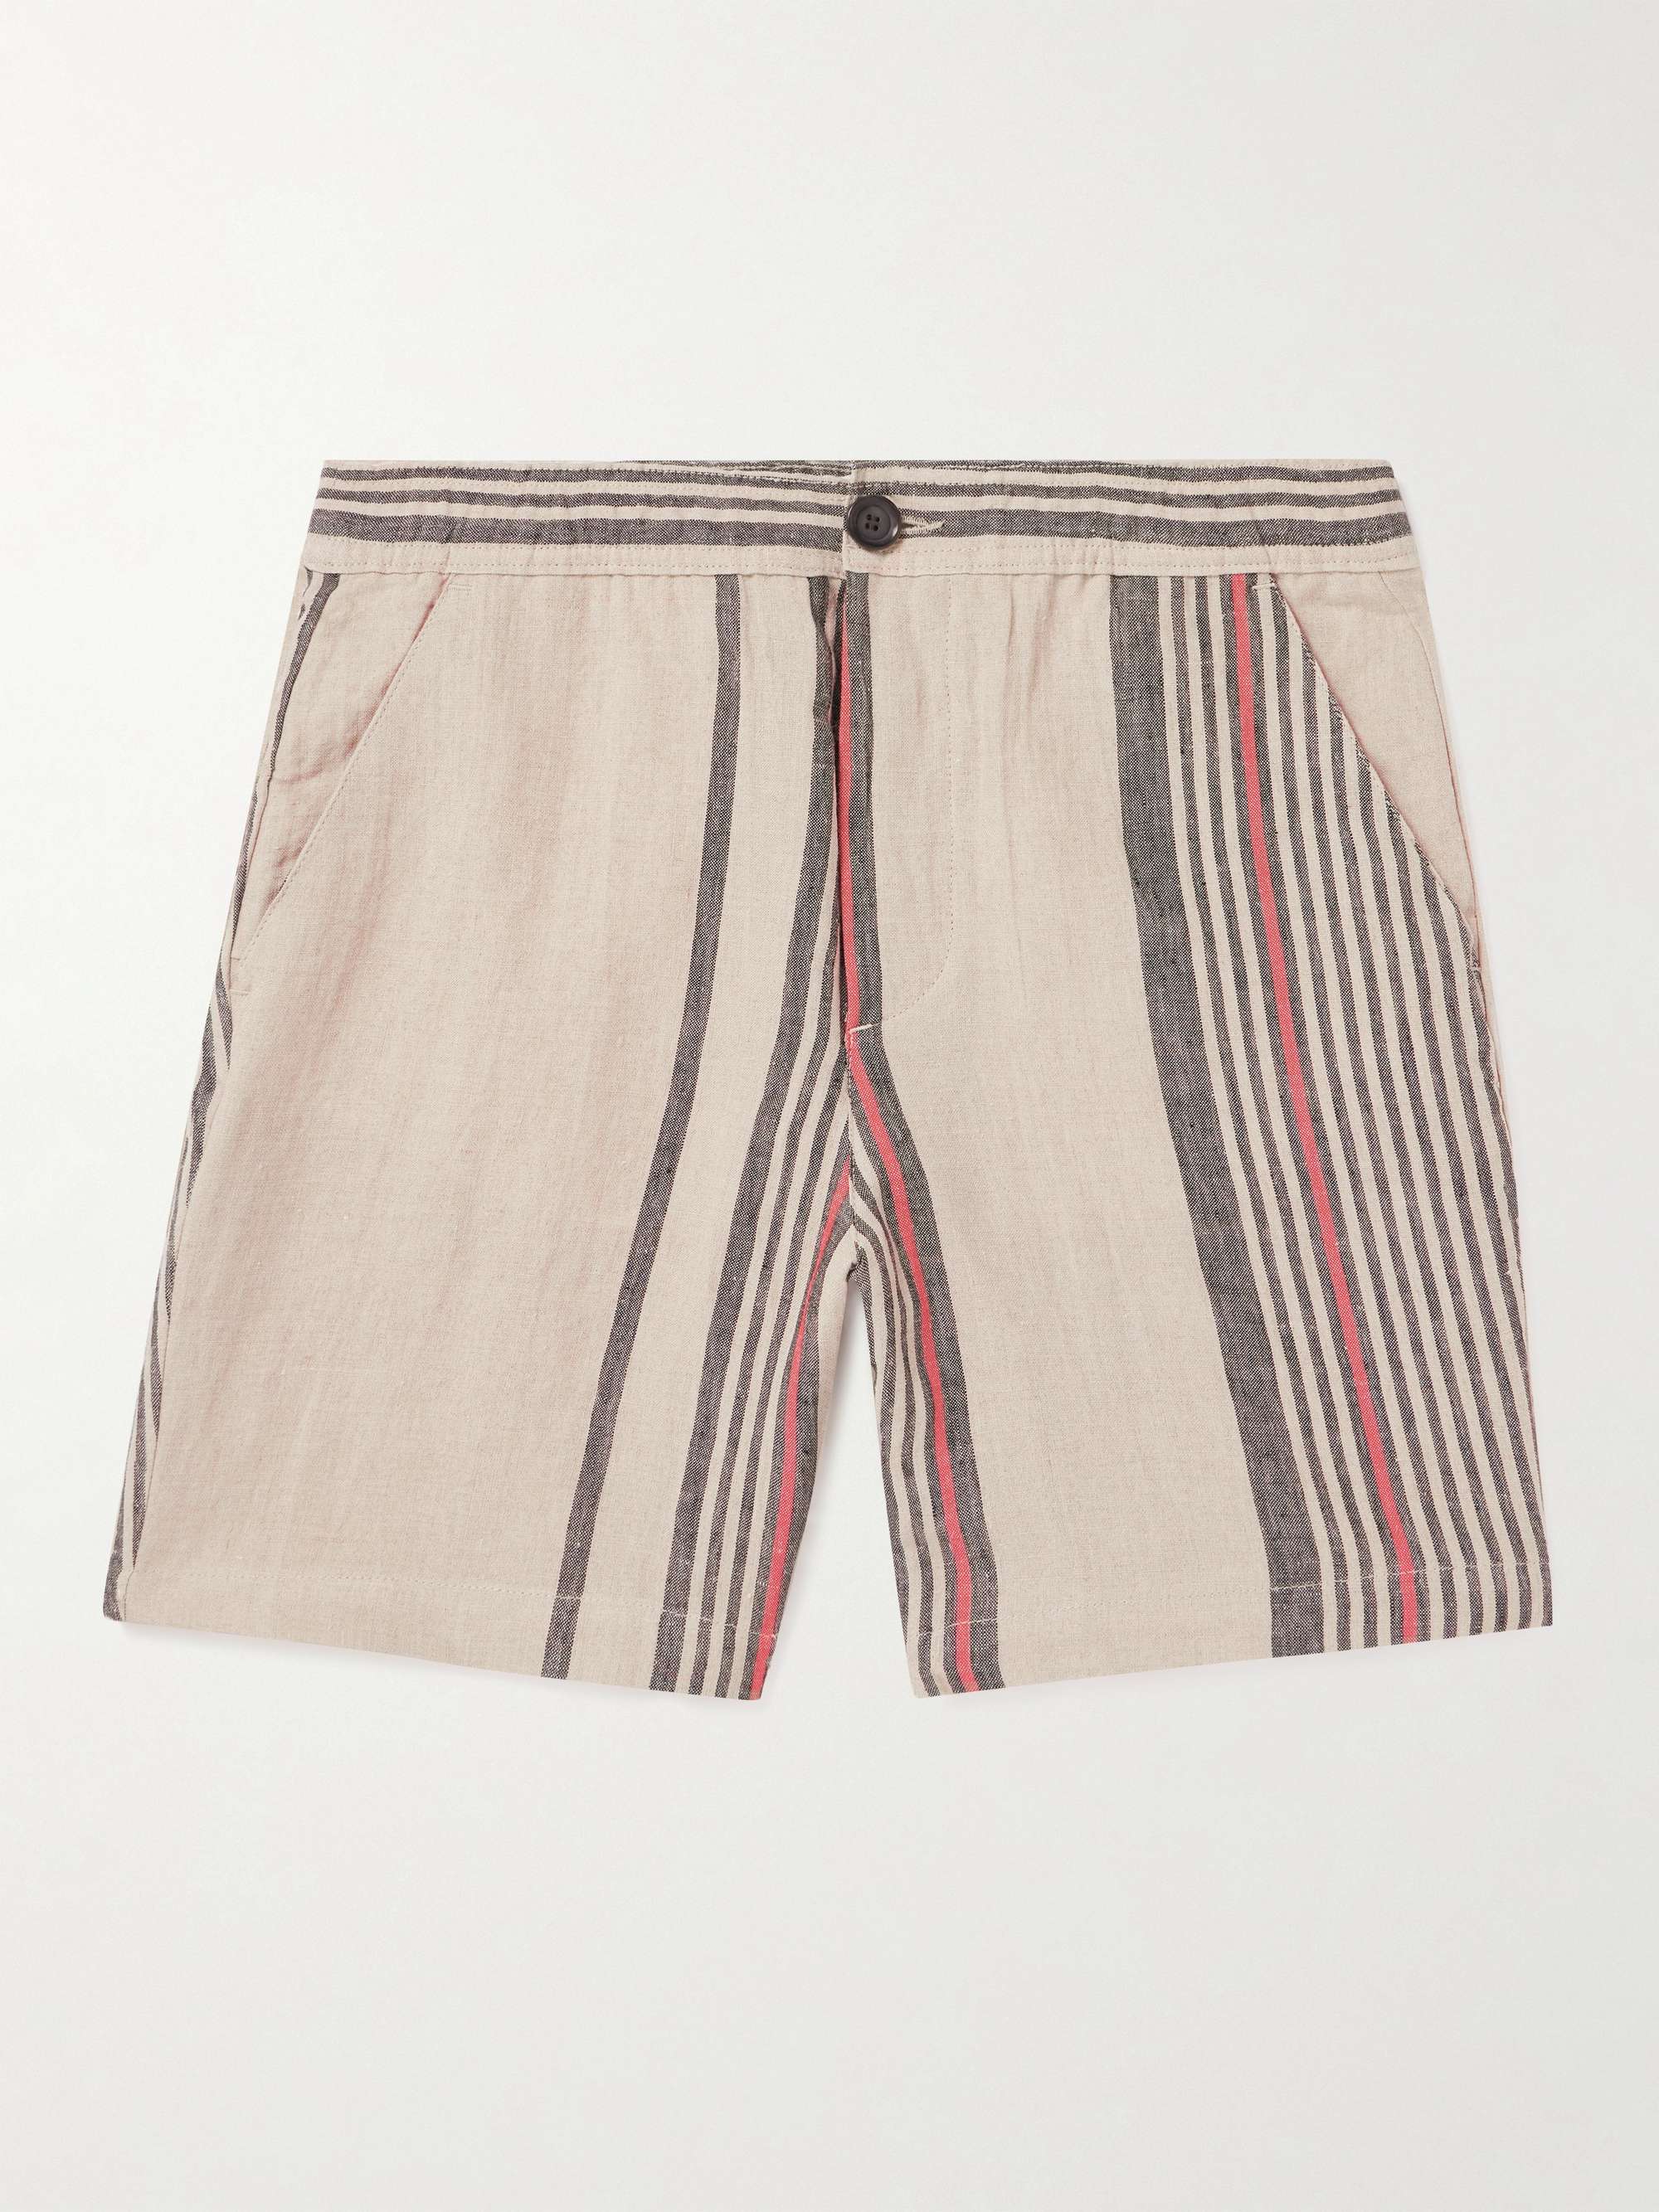 OLIVER SPENCER Osborne Straight-Leg Striped Linen Shorts for Men | MR ...